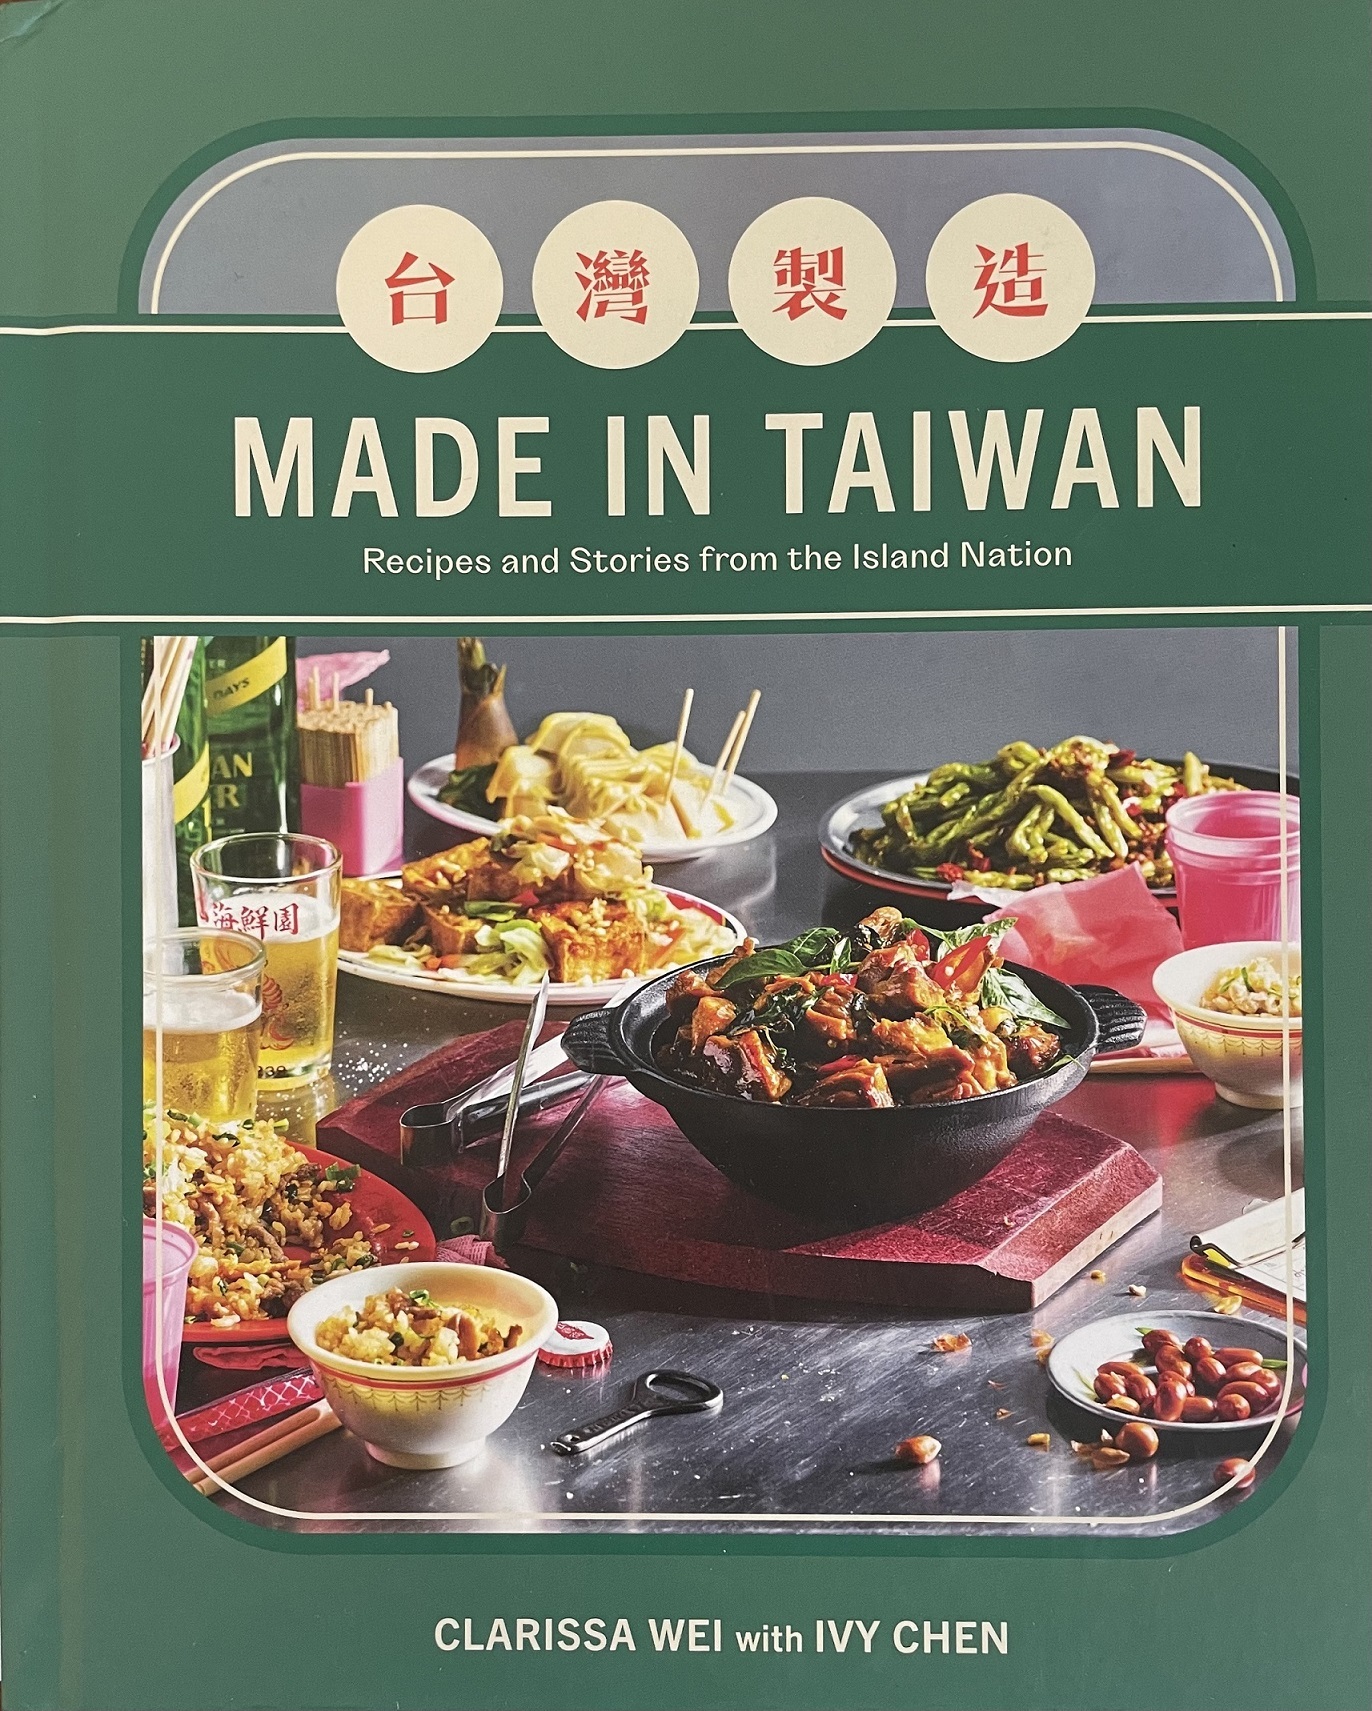 魏貝珊《台灣製造》介紹逾百道臺菜料理精隨及文化，2023出版即獲《紐約時報》、《洛杉磯時報》等媒體評選為最佳食譜書 (文化部提供)